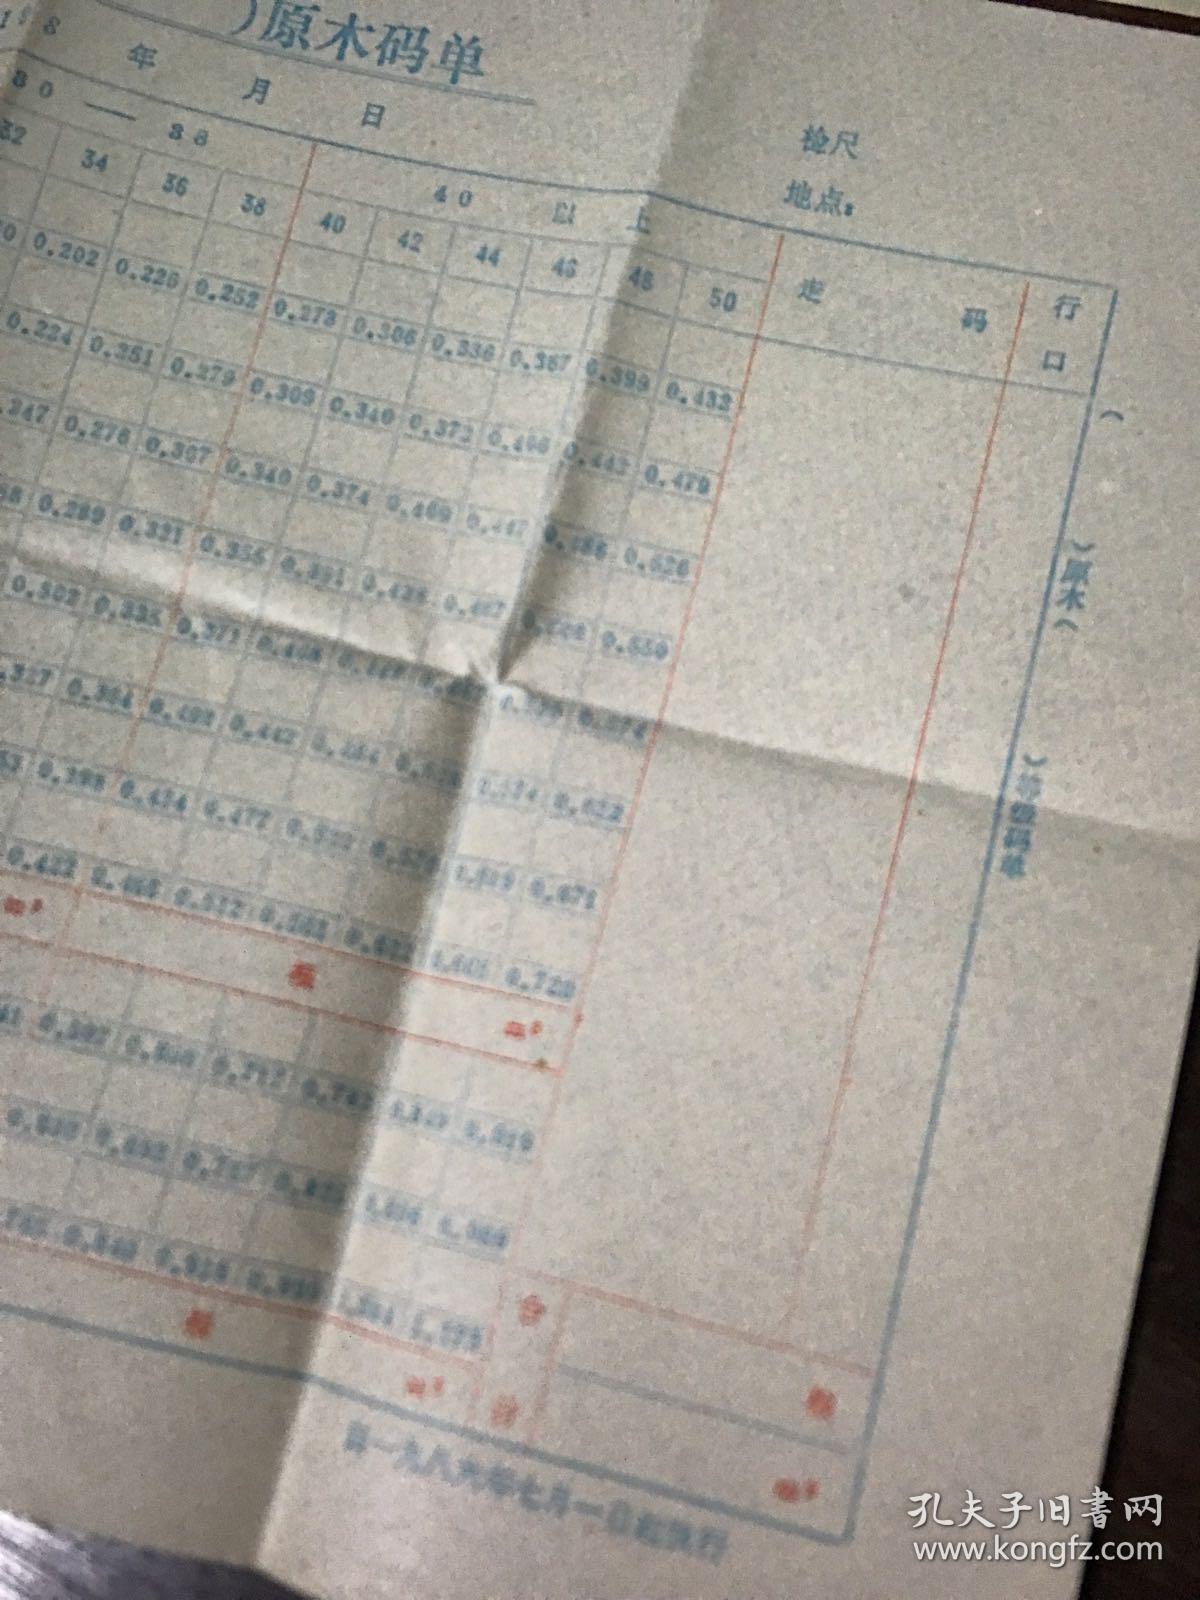 1986年 泰和县原木码单、杉条木码单